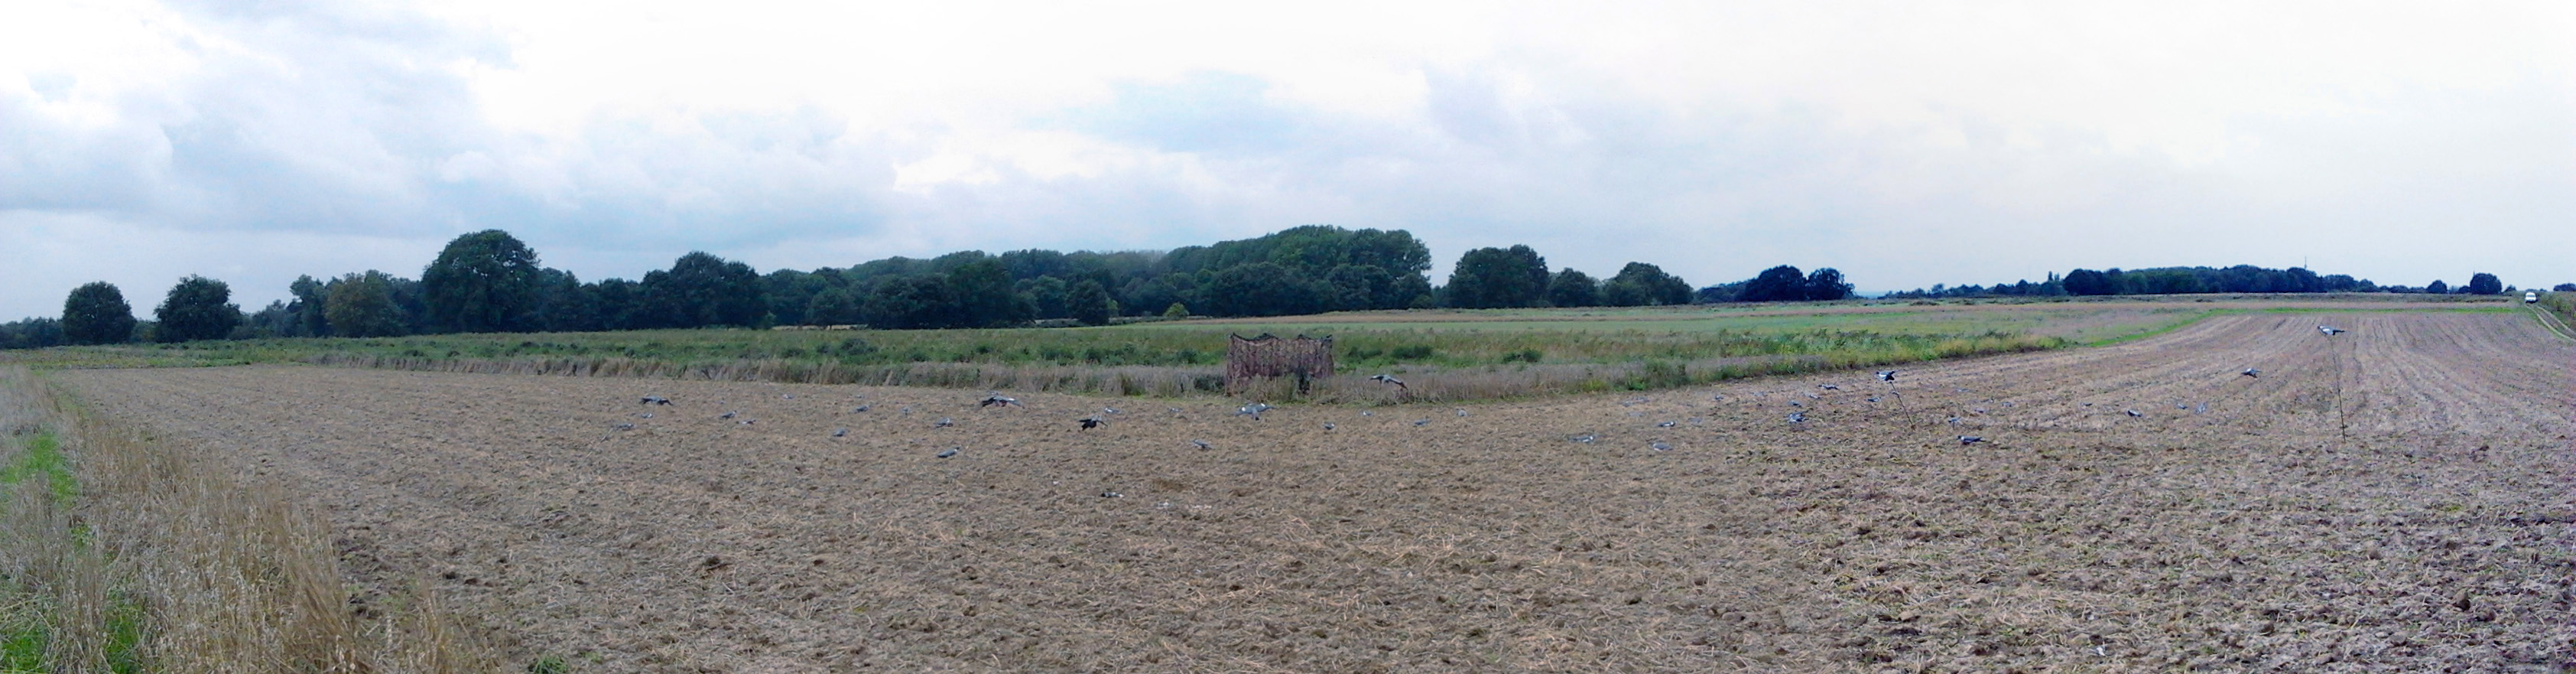 Panorama duivenjacht Kollenberg sept 2013